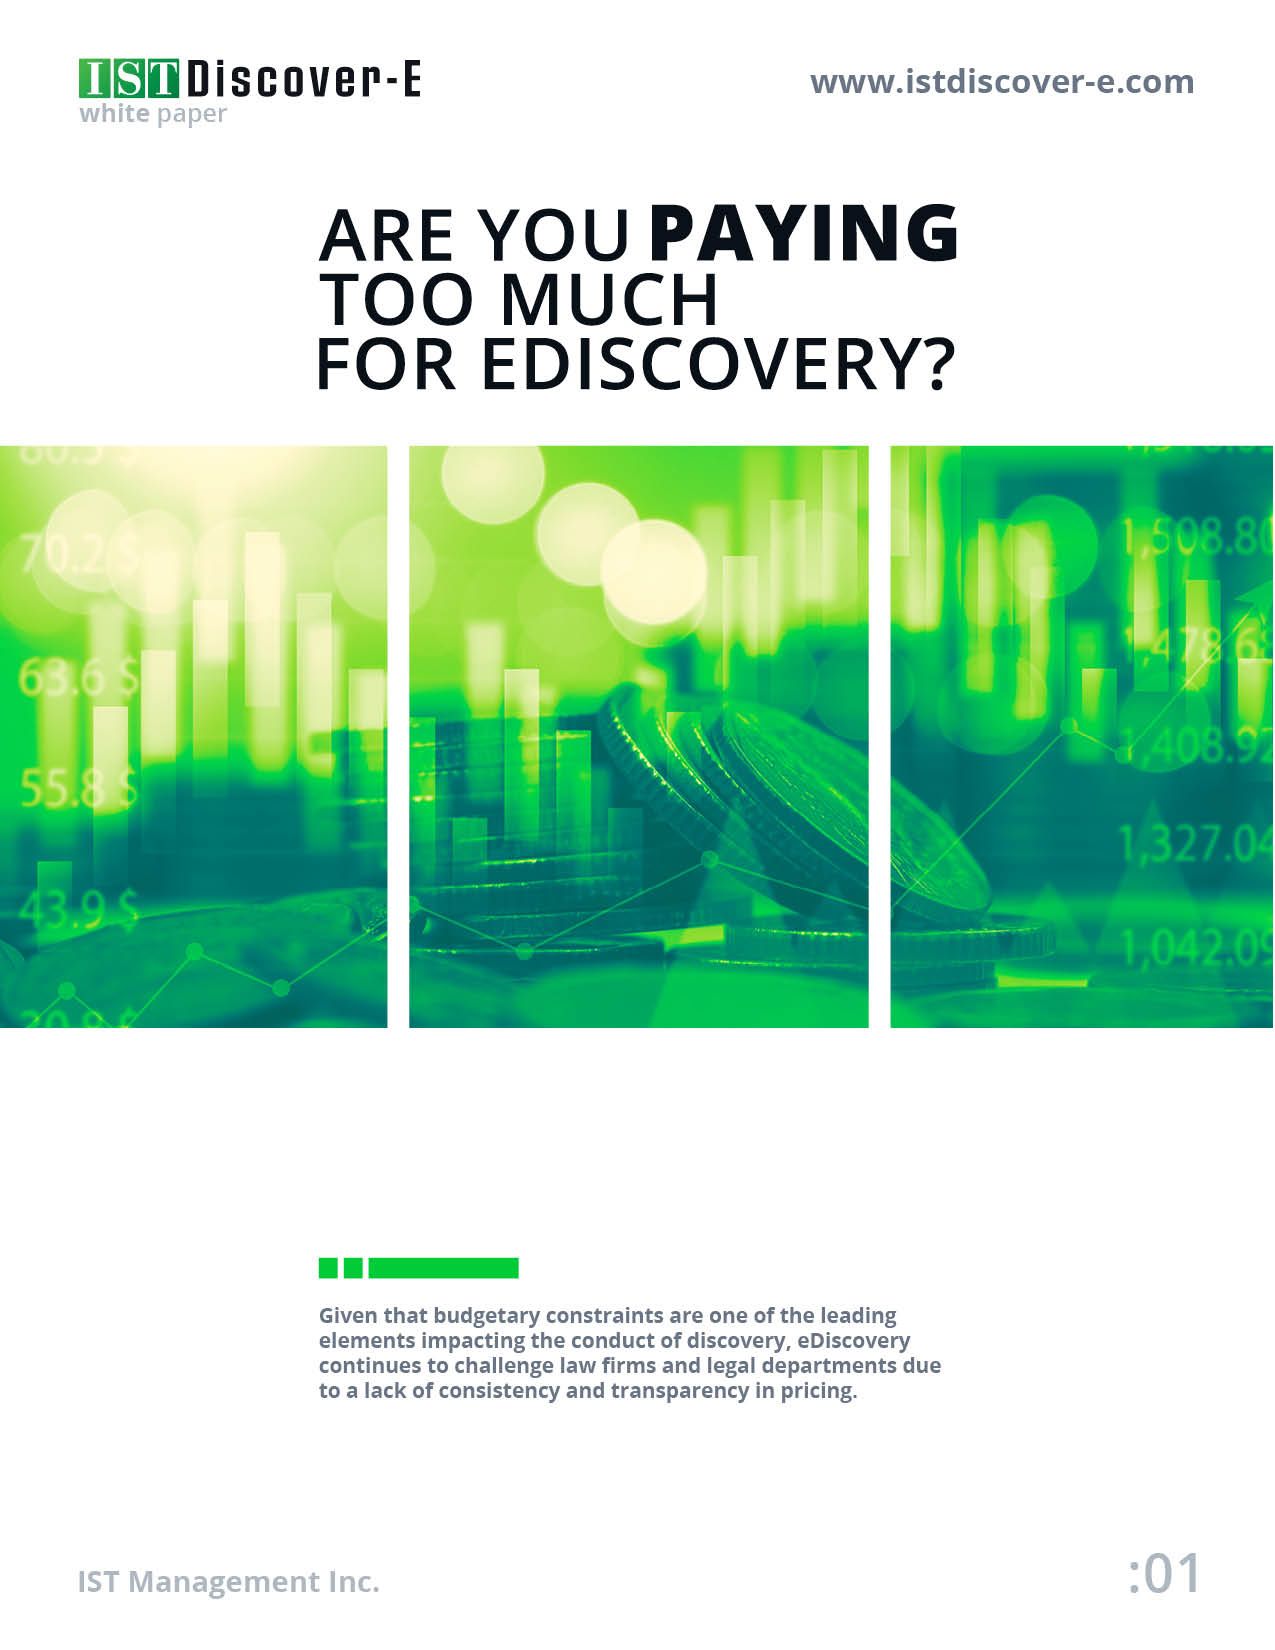 IST Discover-E White Paper Cover Image